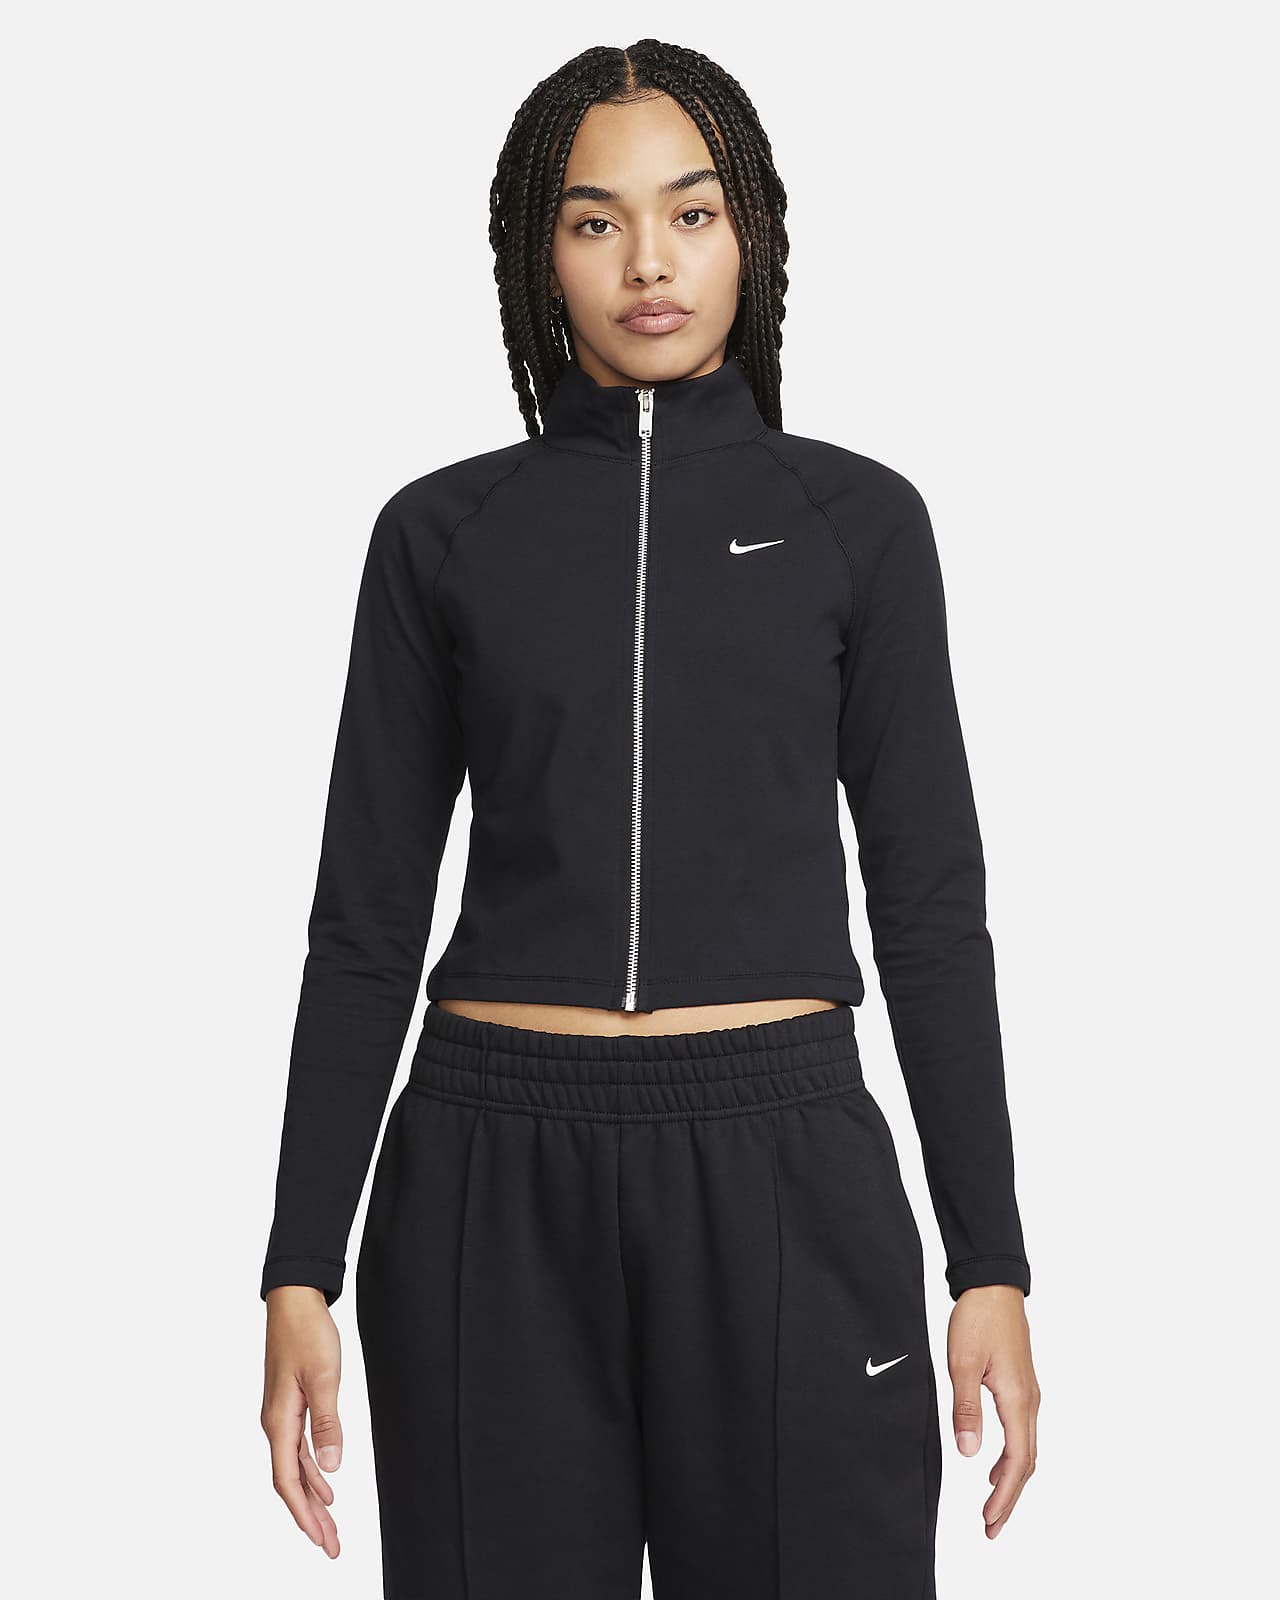 Nike Sportswear Women's Jacket. Nike LU